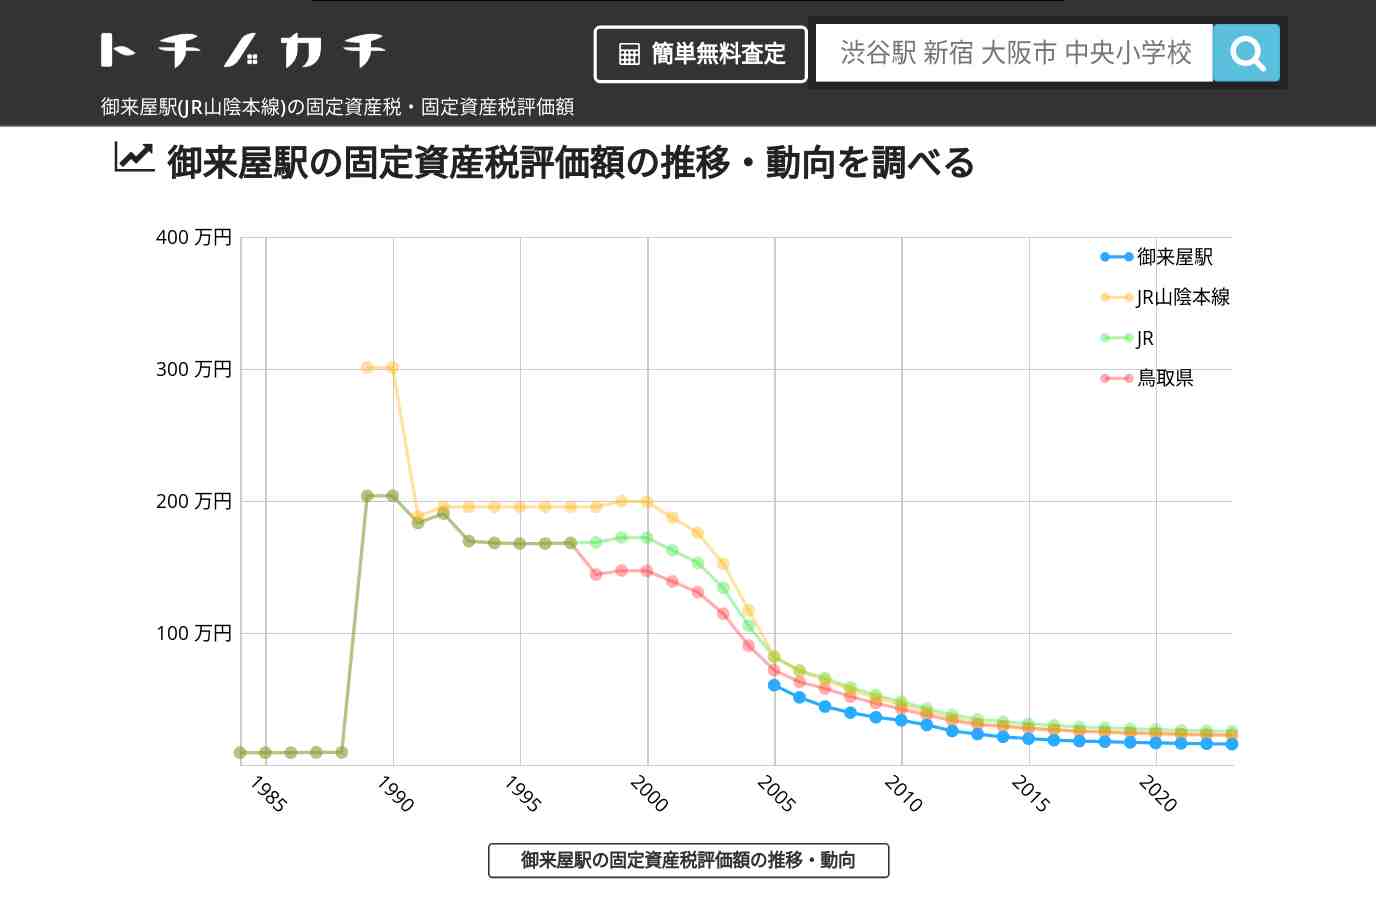 御来屋駅(JR山陰本線)の固定資産税・固定資産税評価額 | トチノカチ